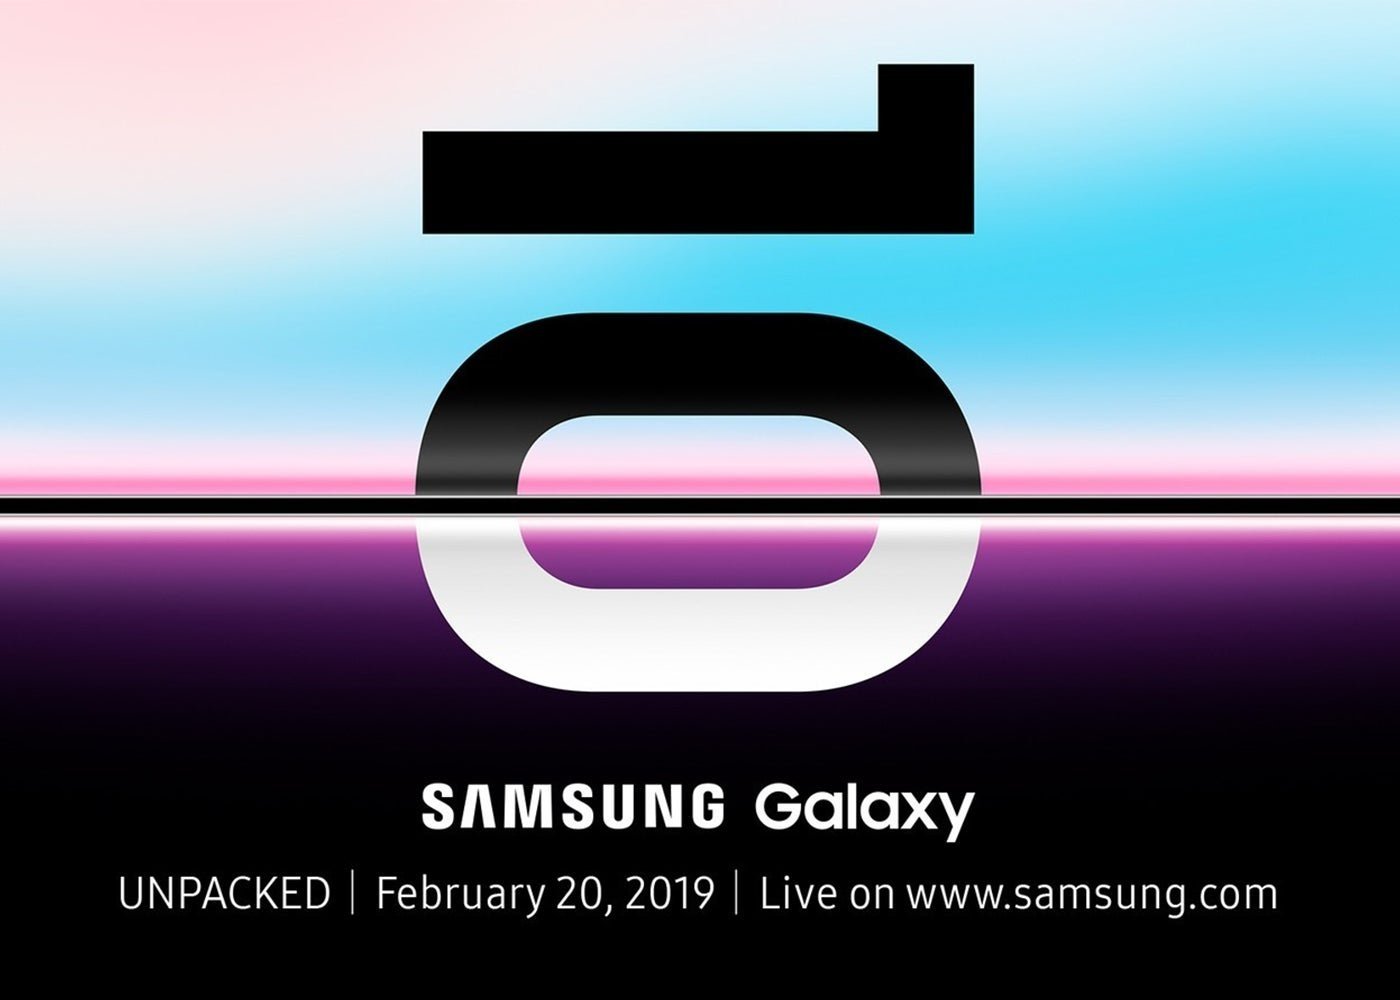 Samsung Galaxy S10, comparativa de tamaños